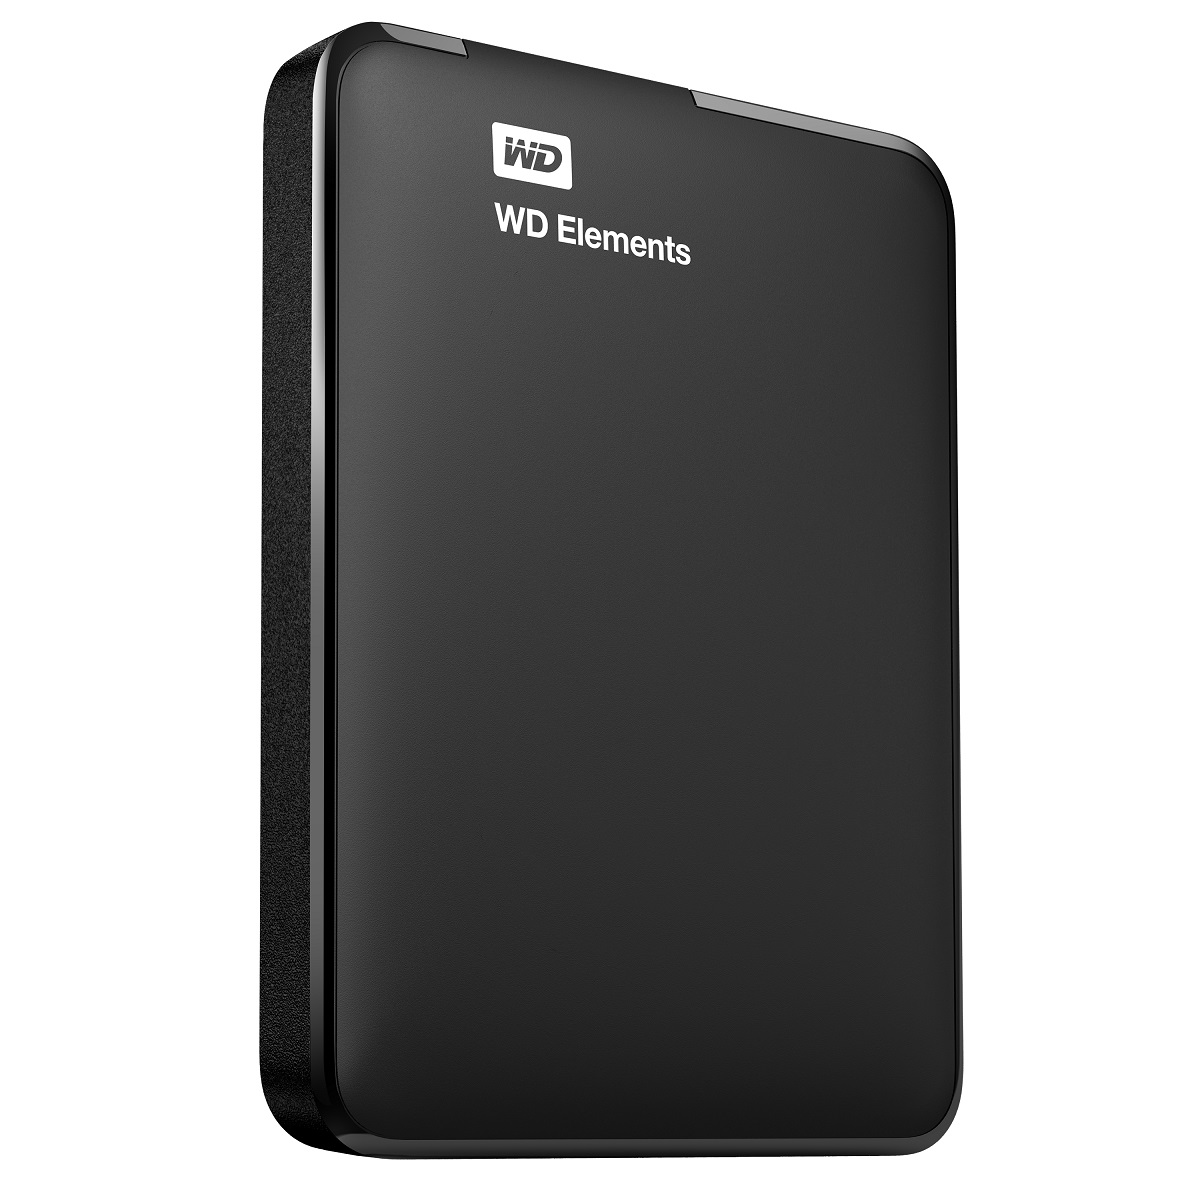 WD Elements Portable 1.0TB USB 3.0 External Hard Drive (WDBUZG0010BBK)